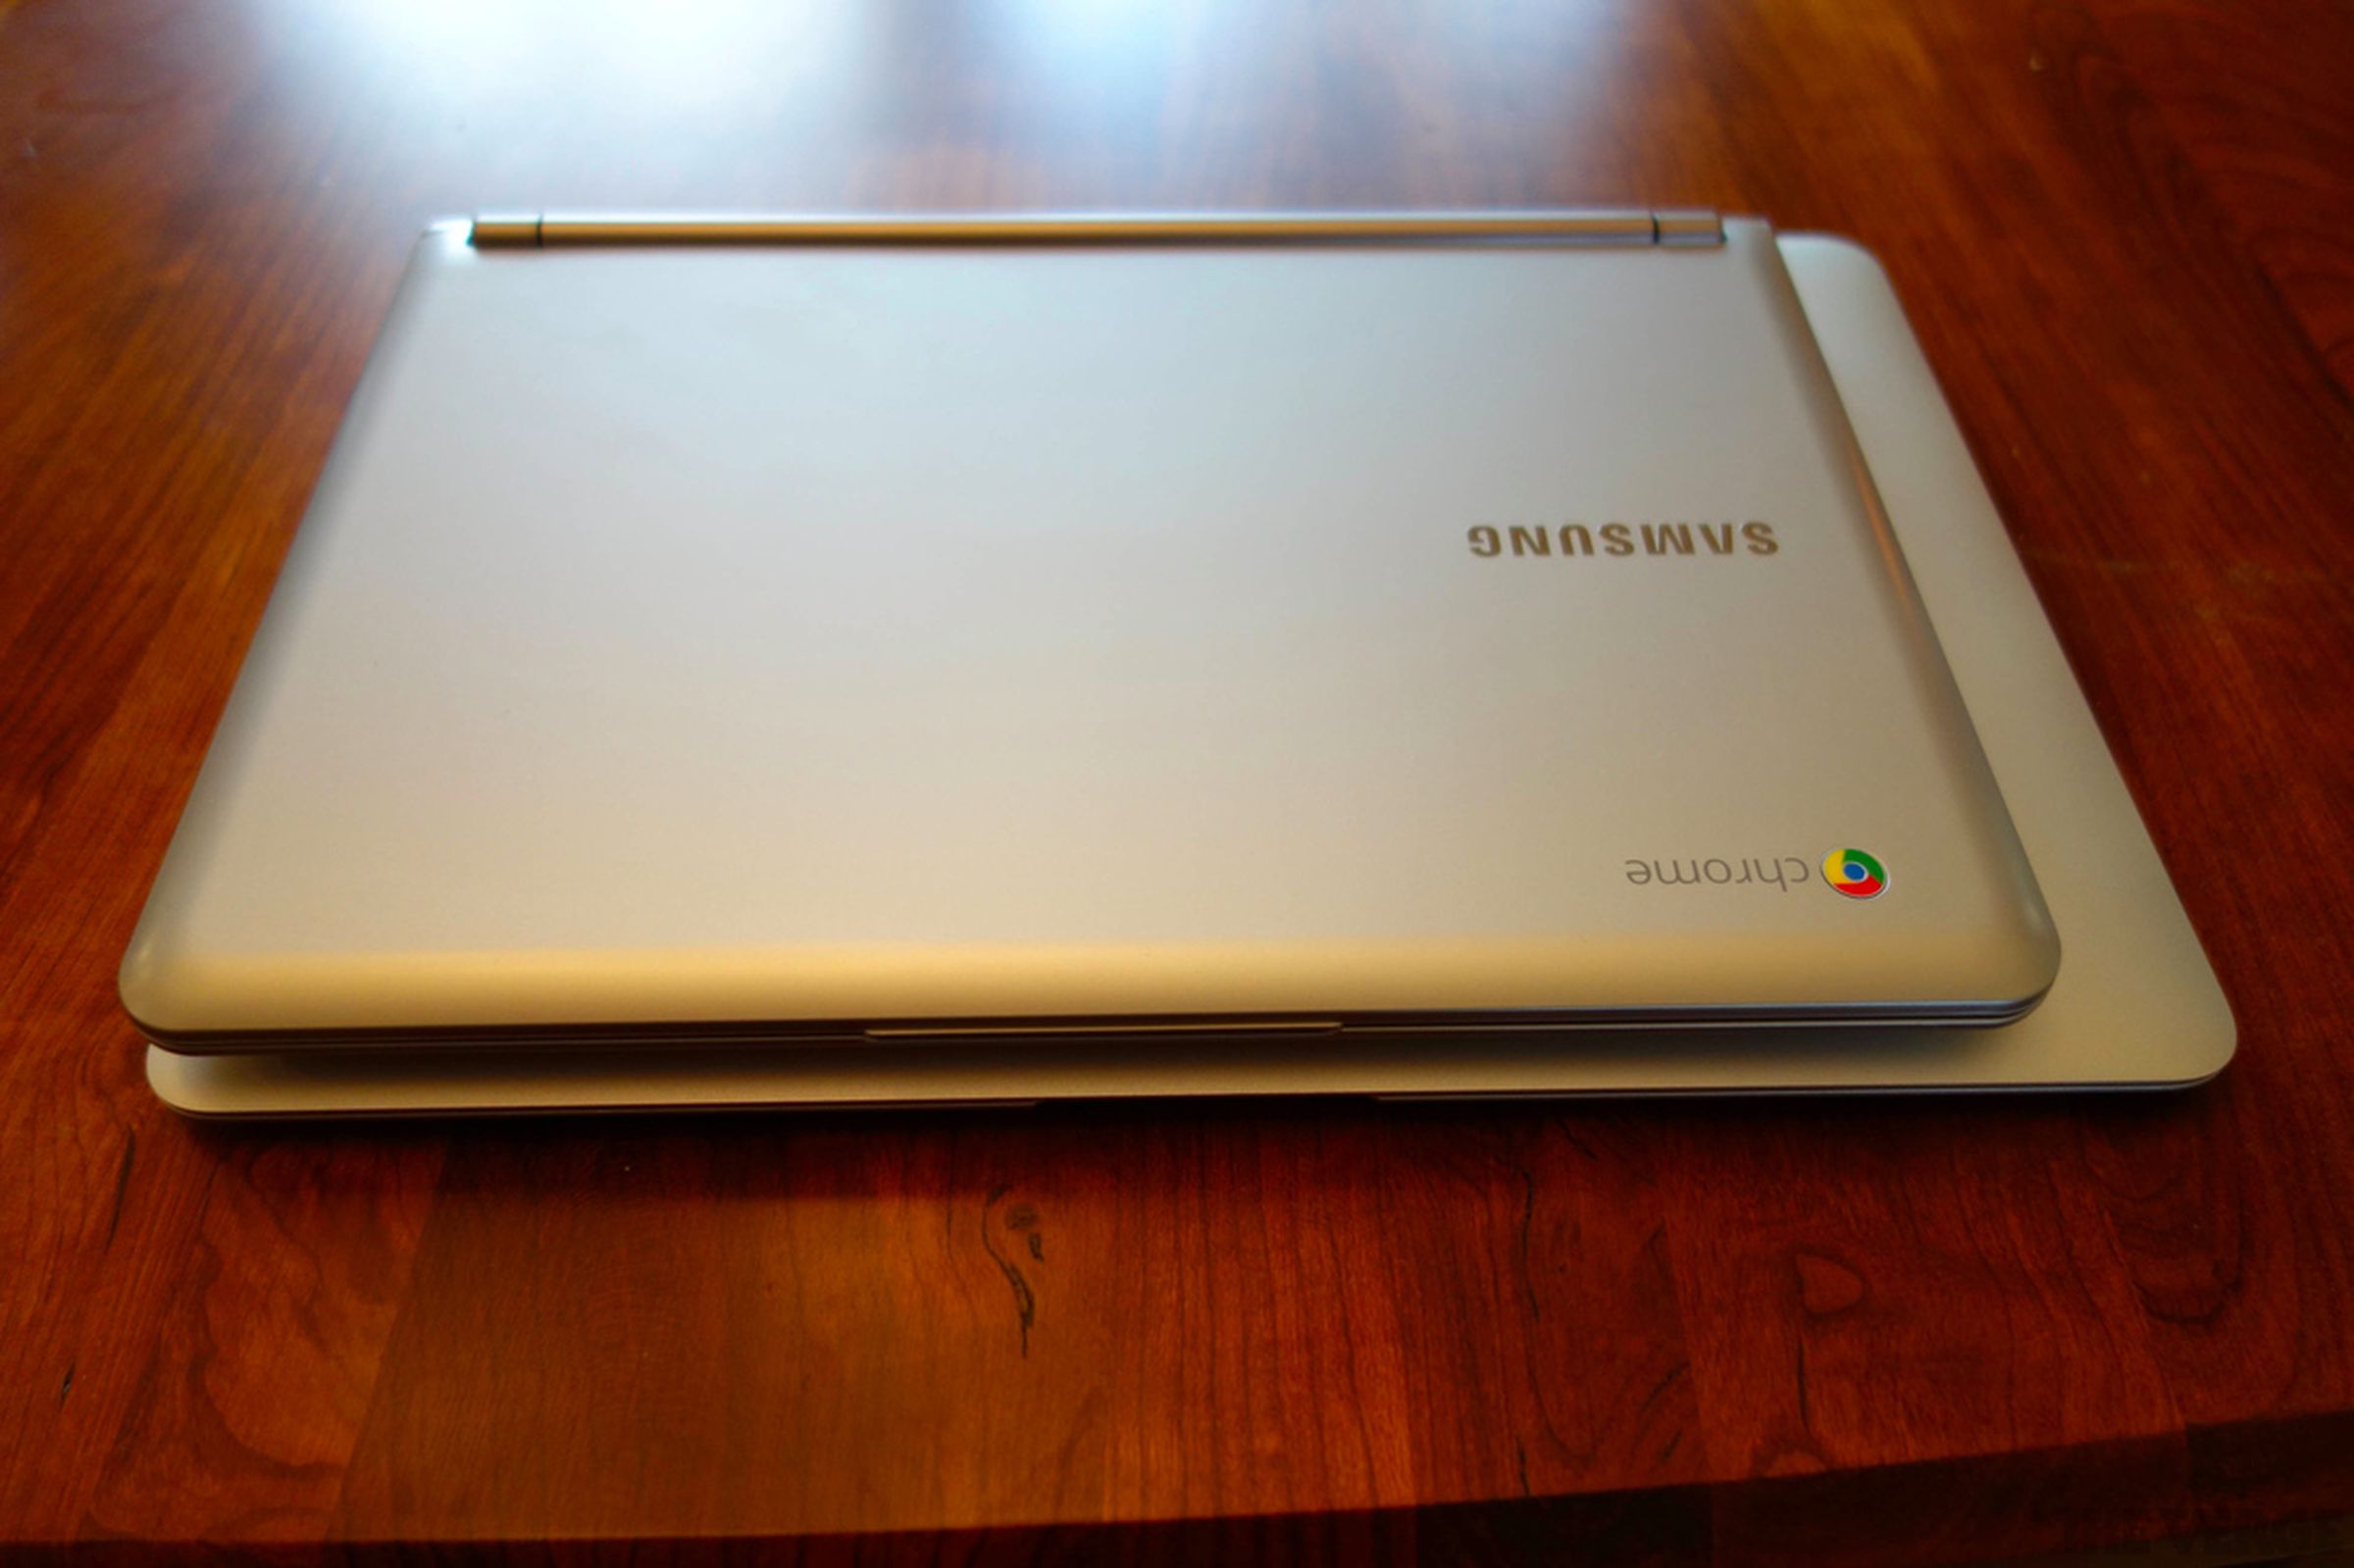 Samsung Chromebook review